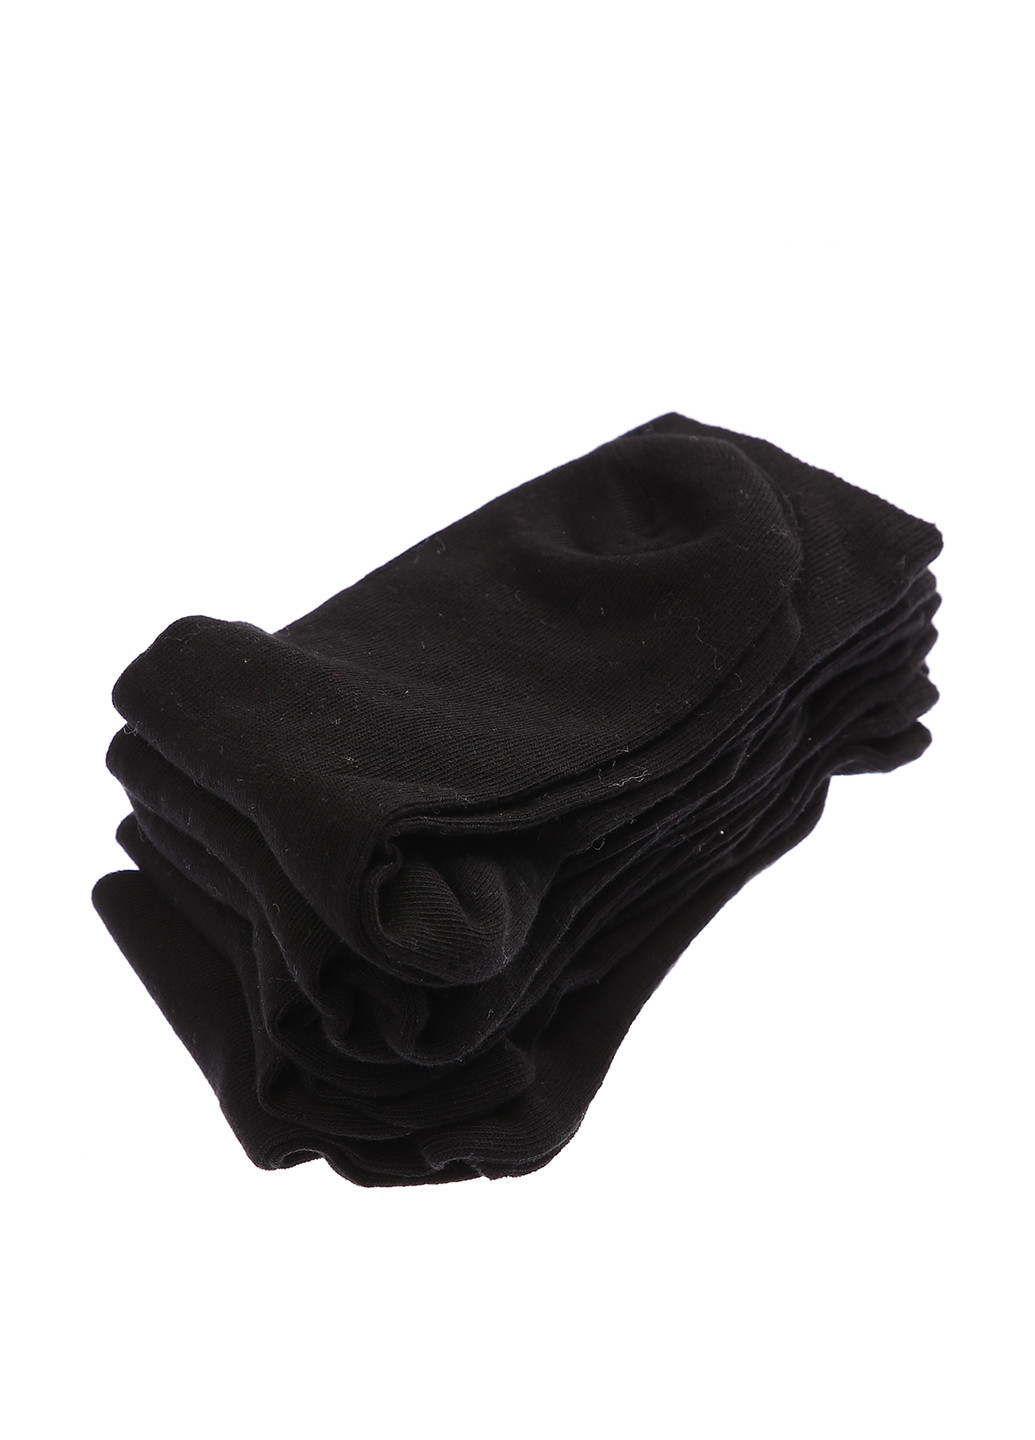 Носки (5 пар) H&M однотонные чёрные повседневные